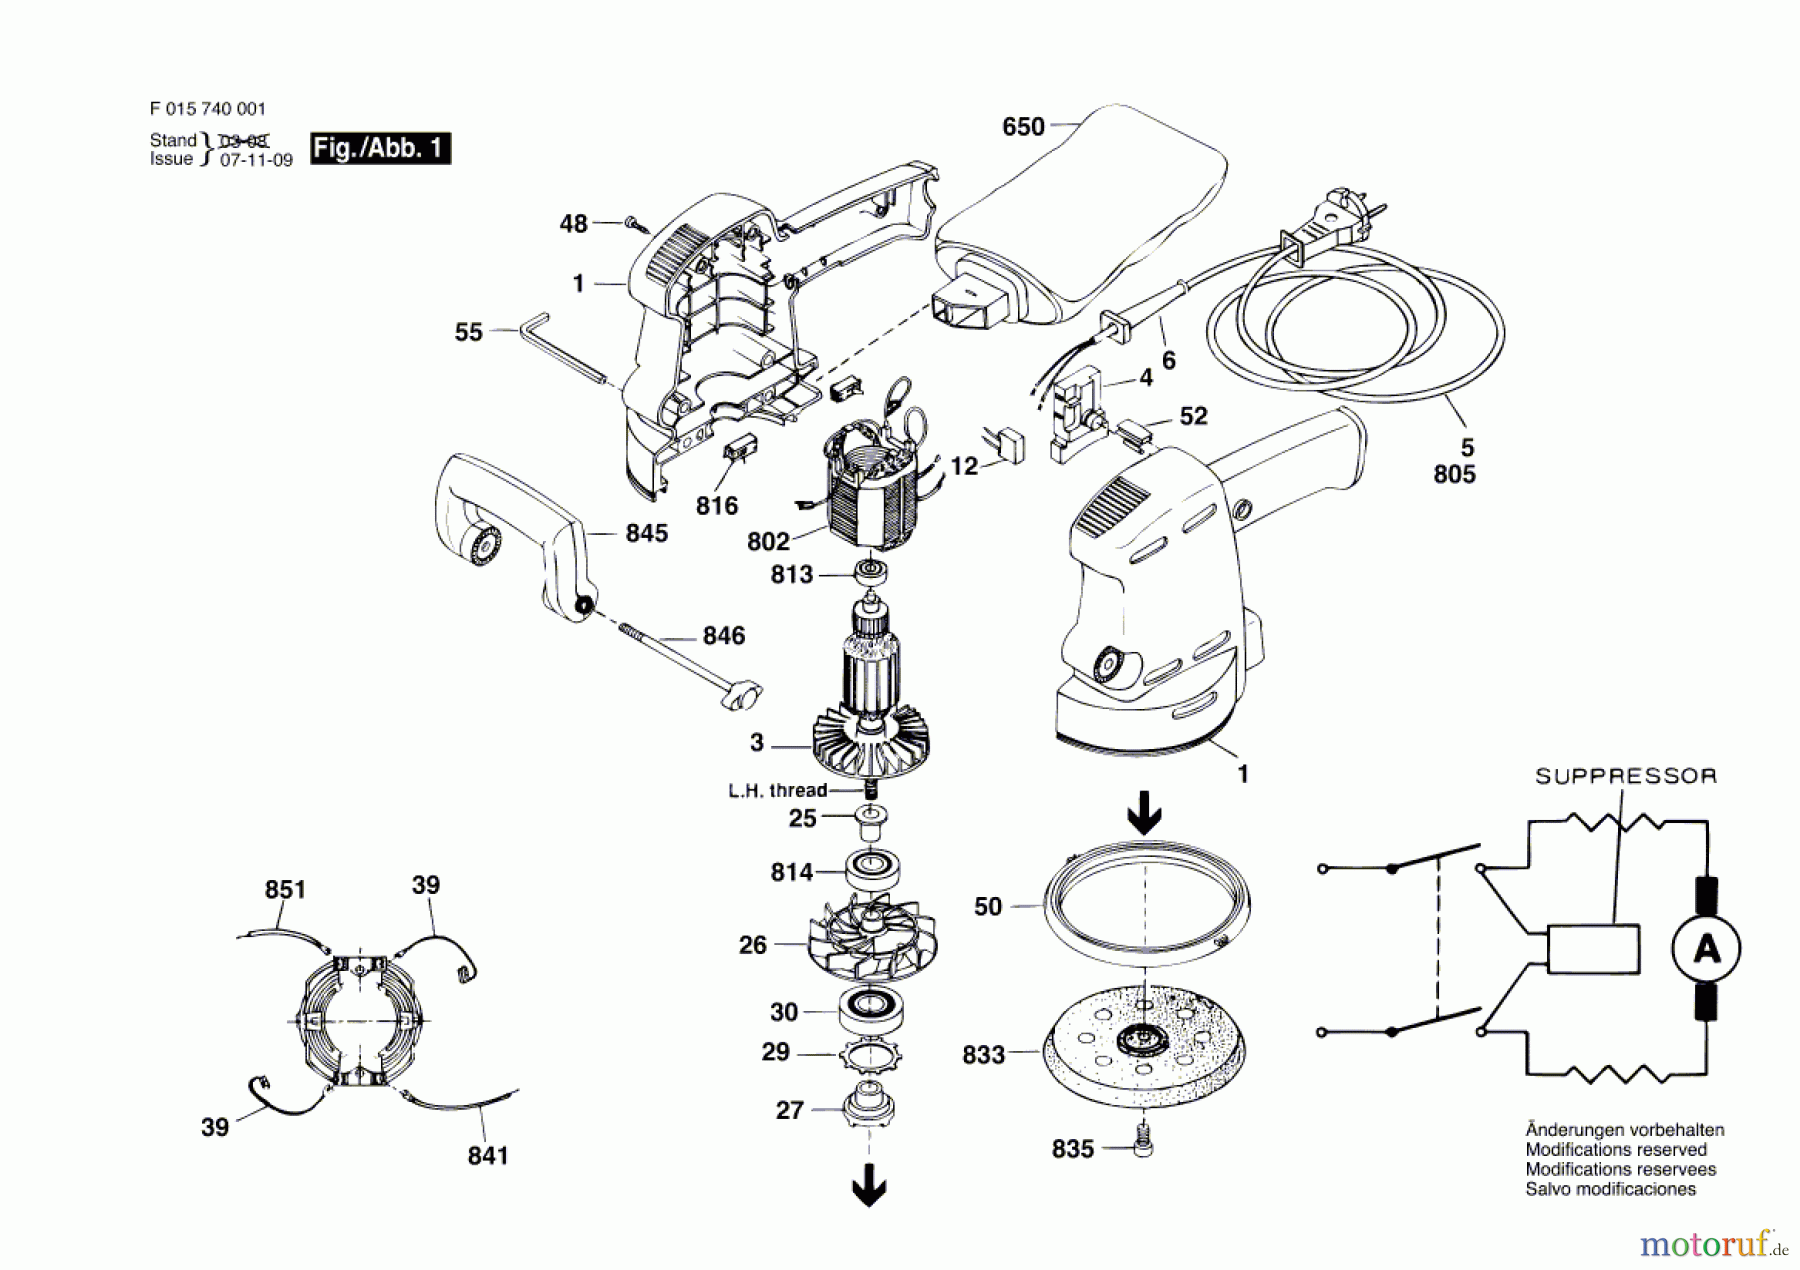  Bosch Werkzeug Exzenterschleifer 7400 H1 Seite 1